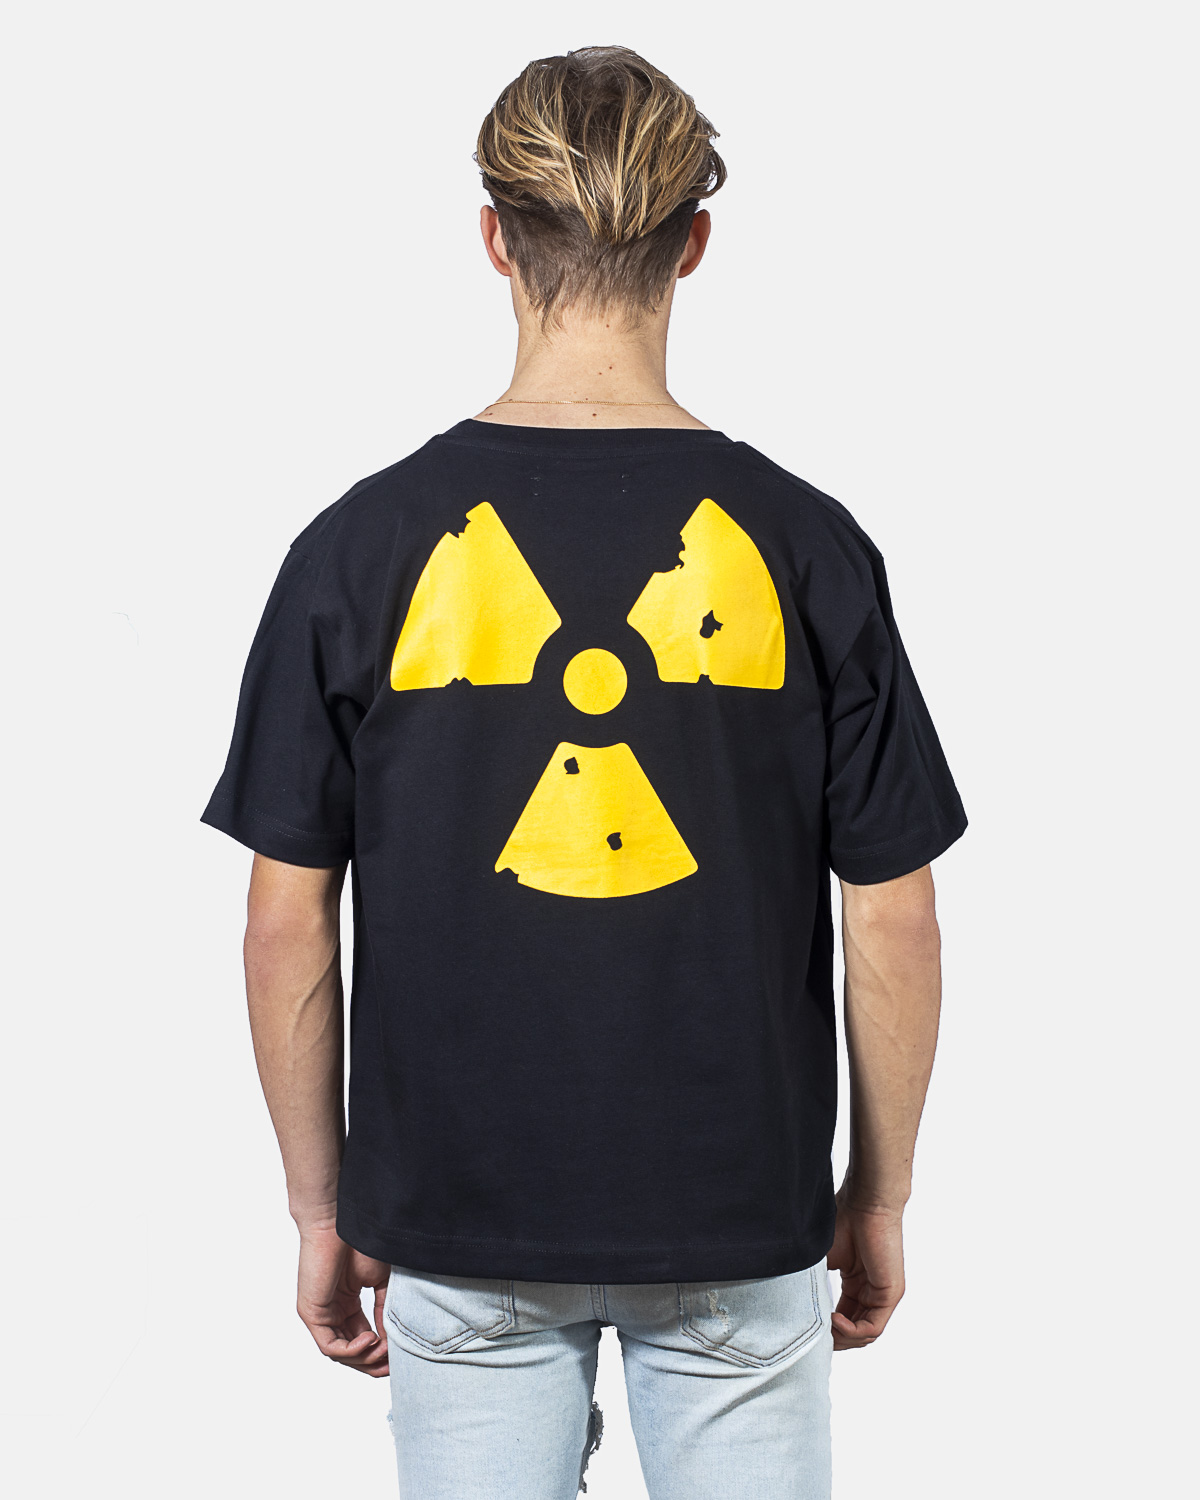 Nucleair logo shirt-Toxic Garments